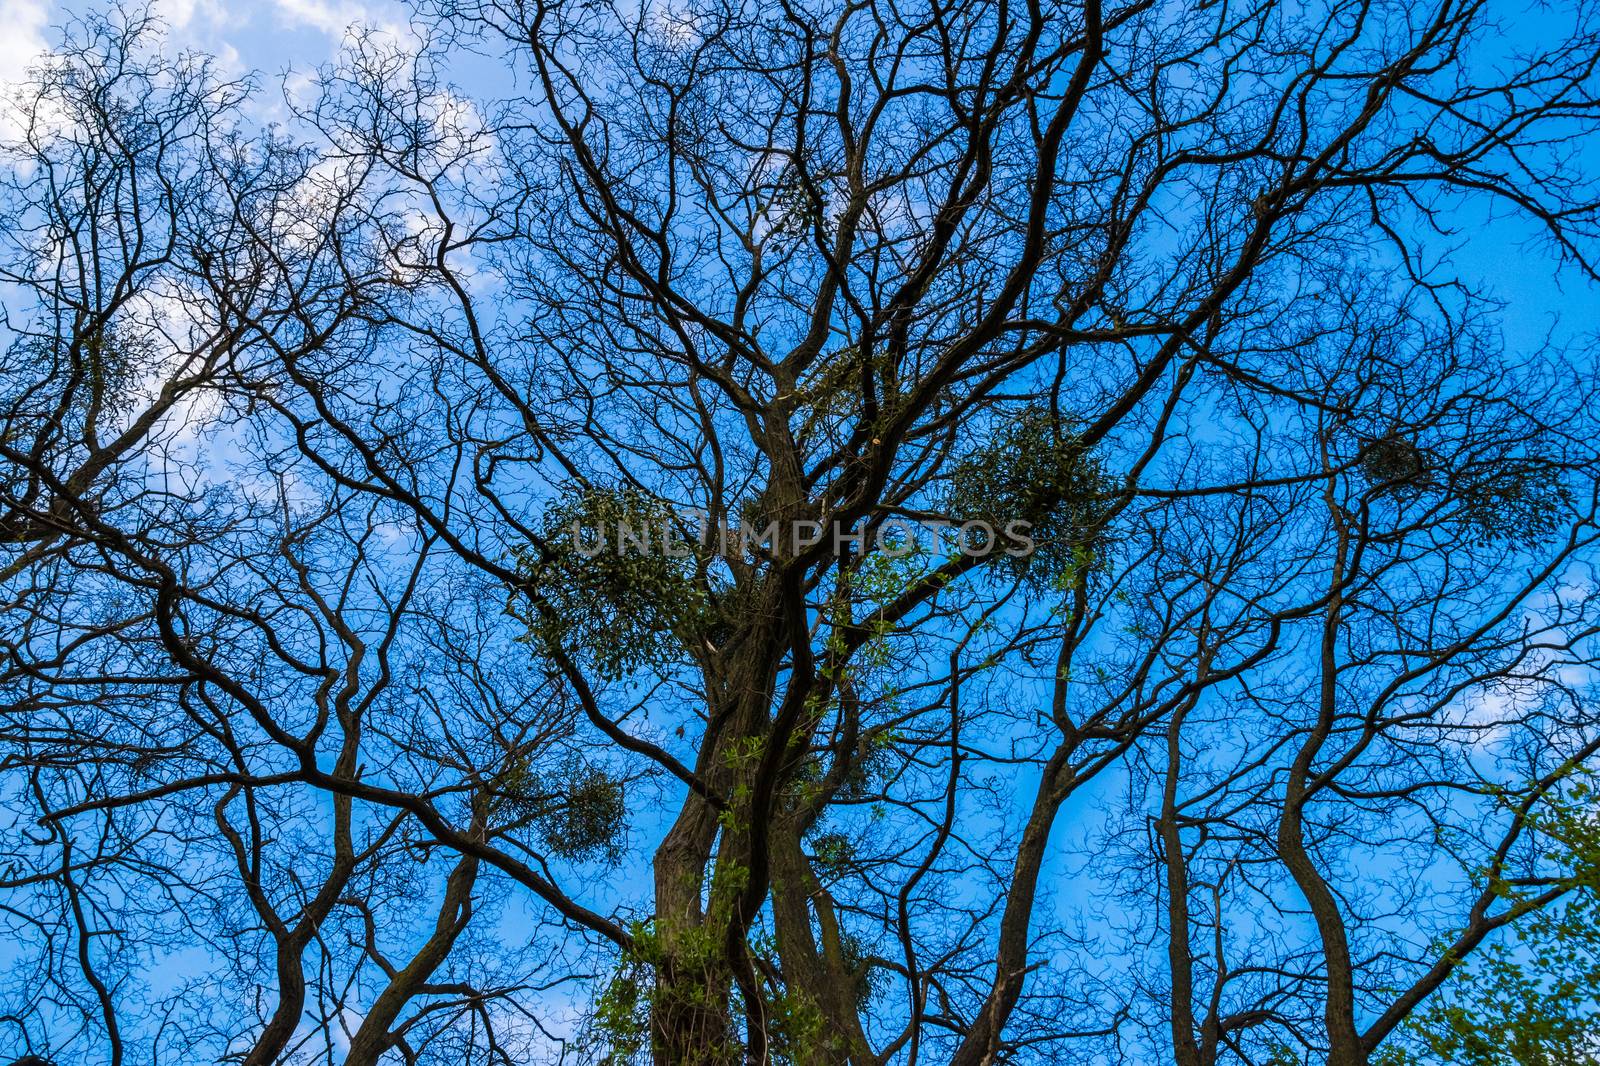 European mistletoe on bald tree in winter blue sky clouds